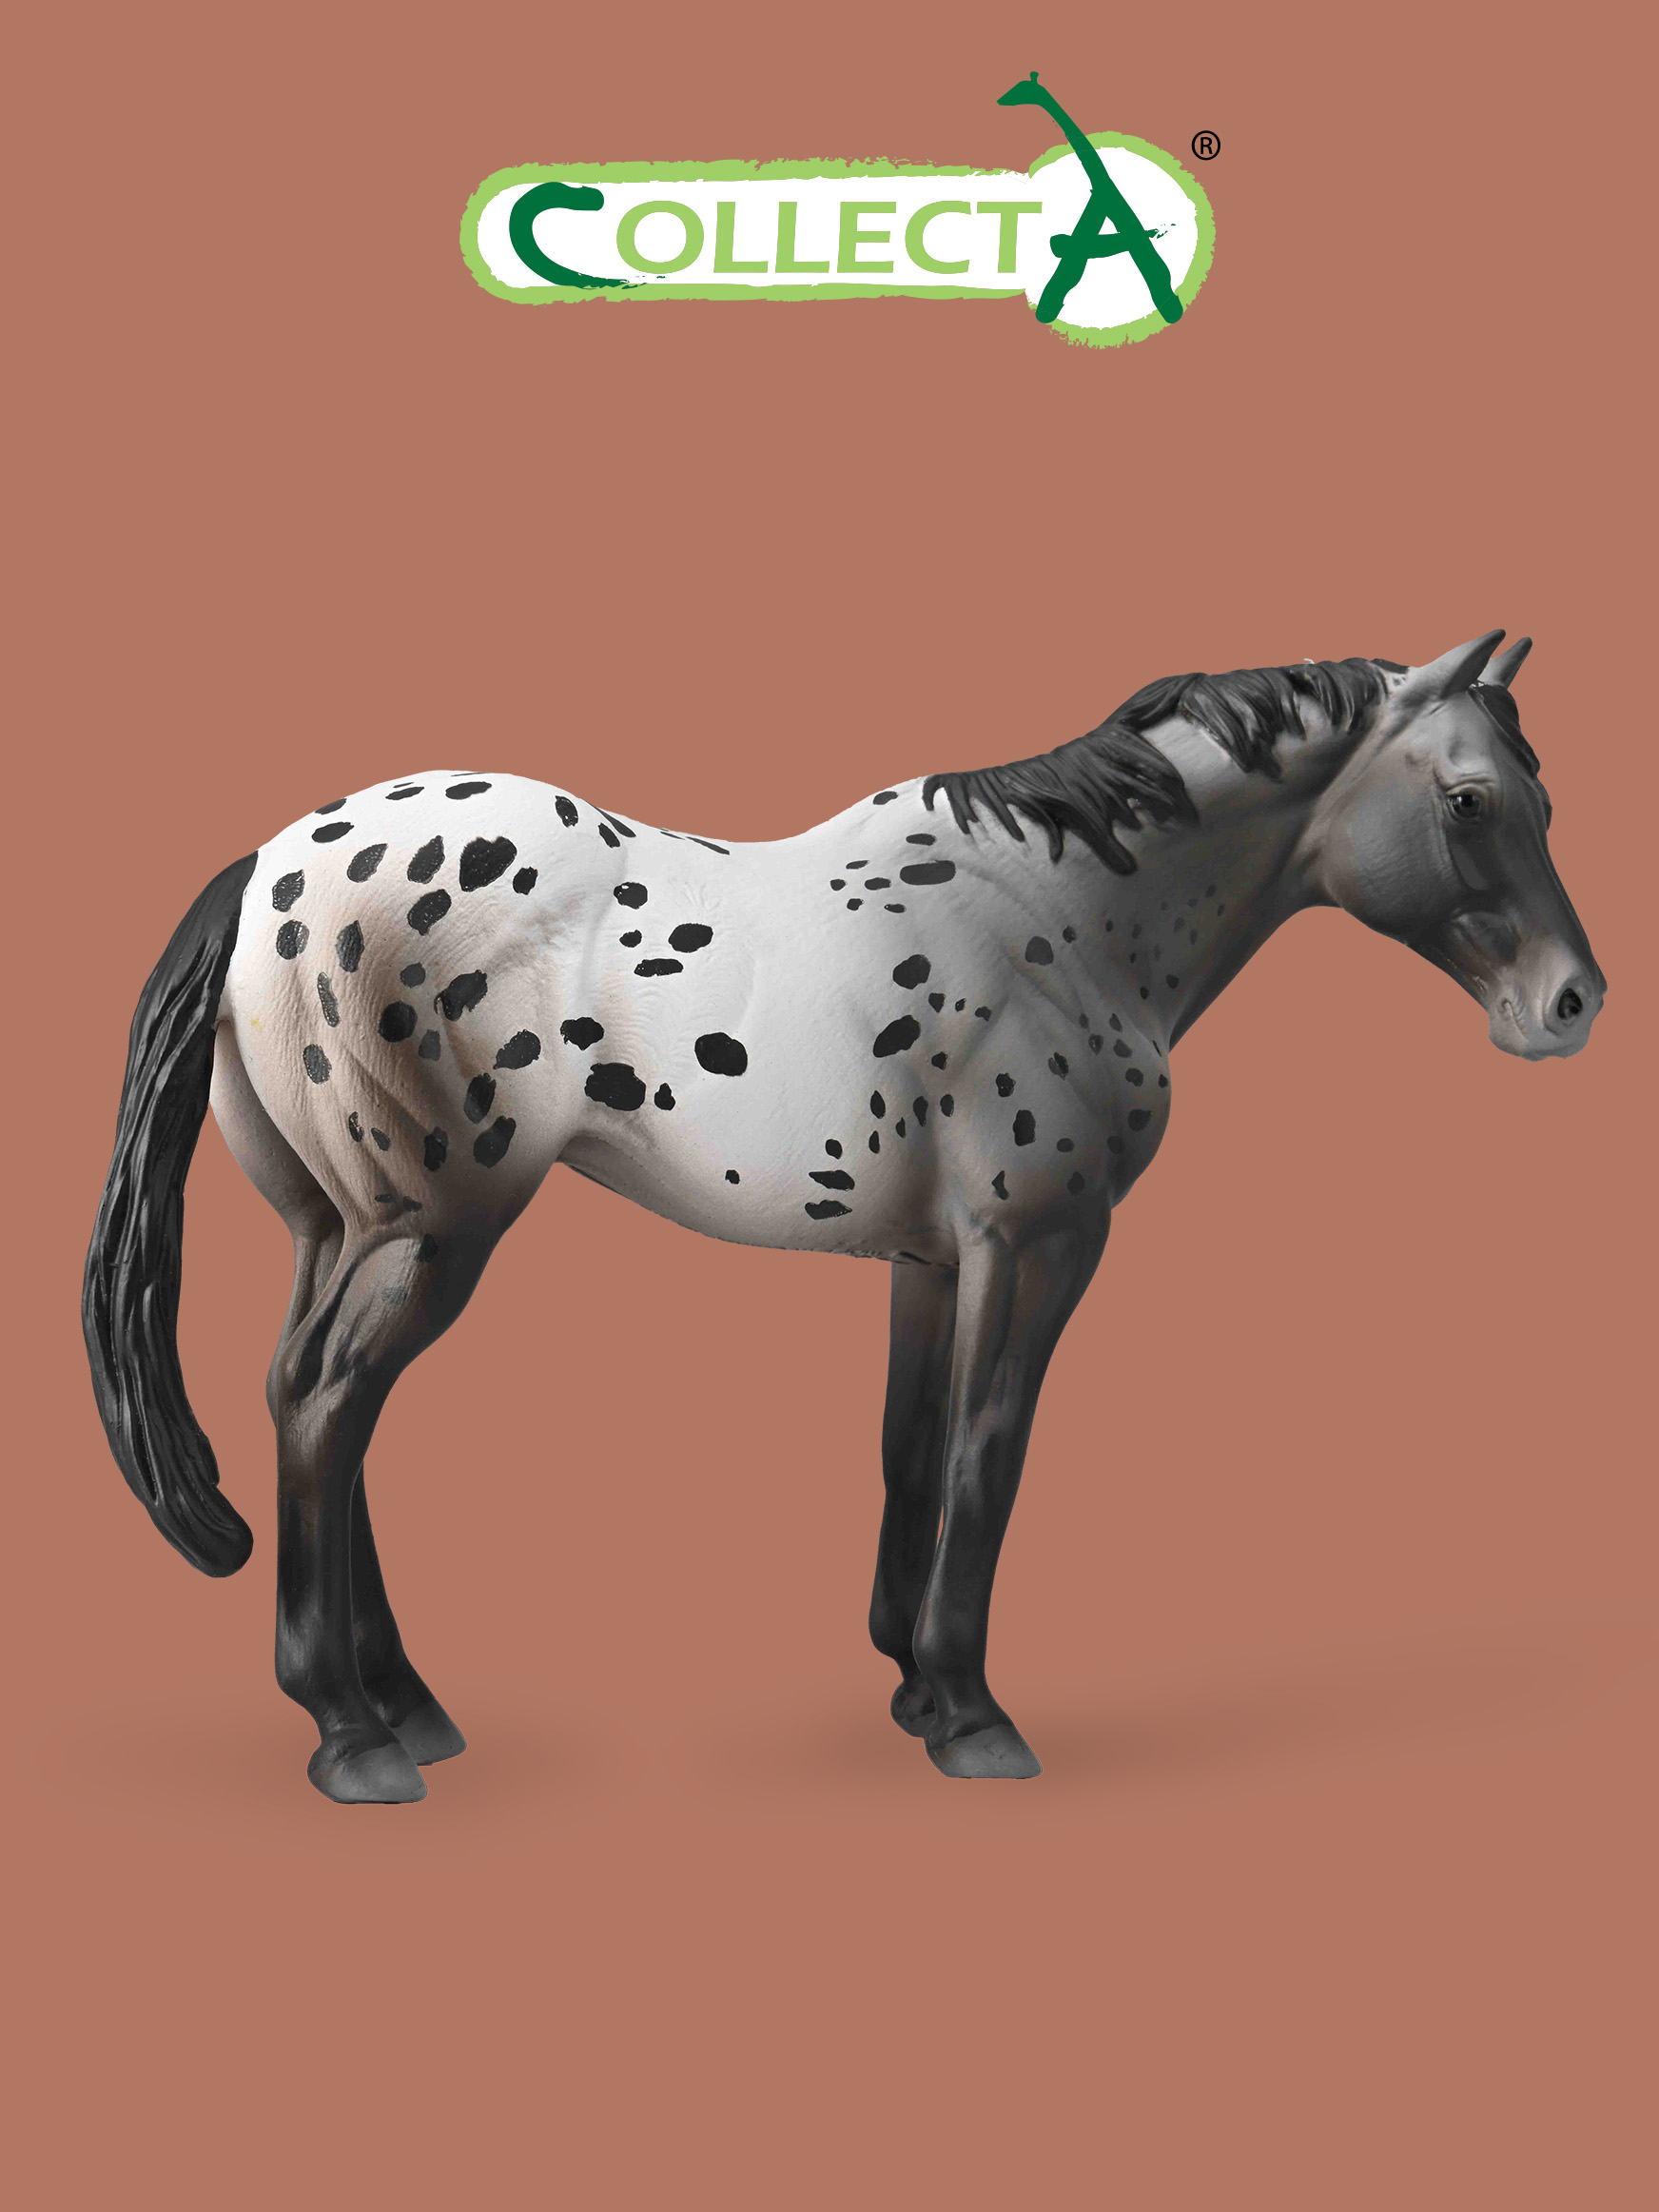 Фигурка Collecta животного Лошадь Аппалузский голубой чалый фигурка животного лошадь маре